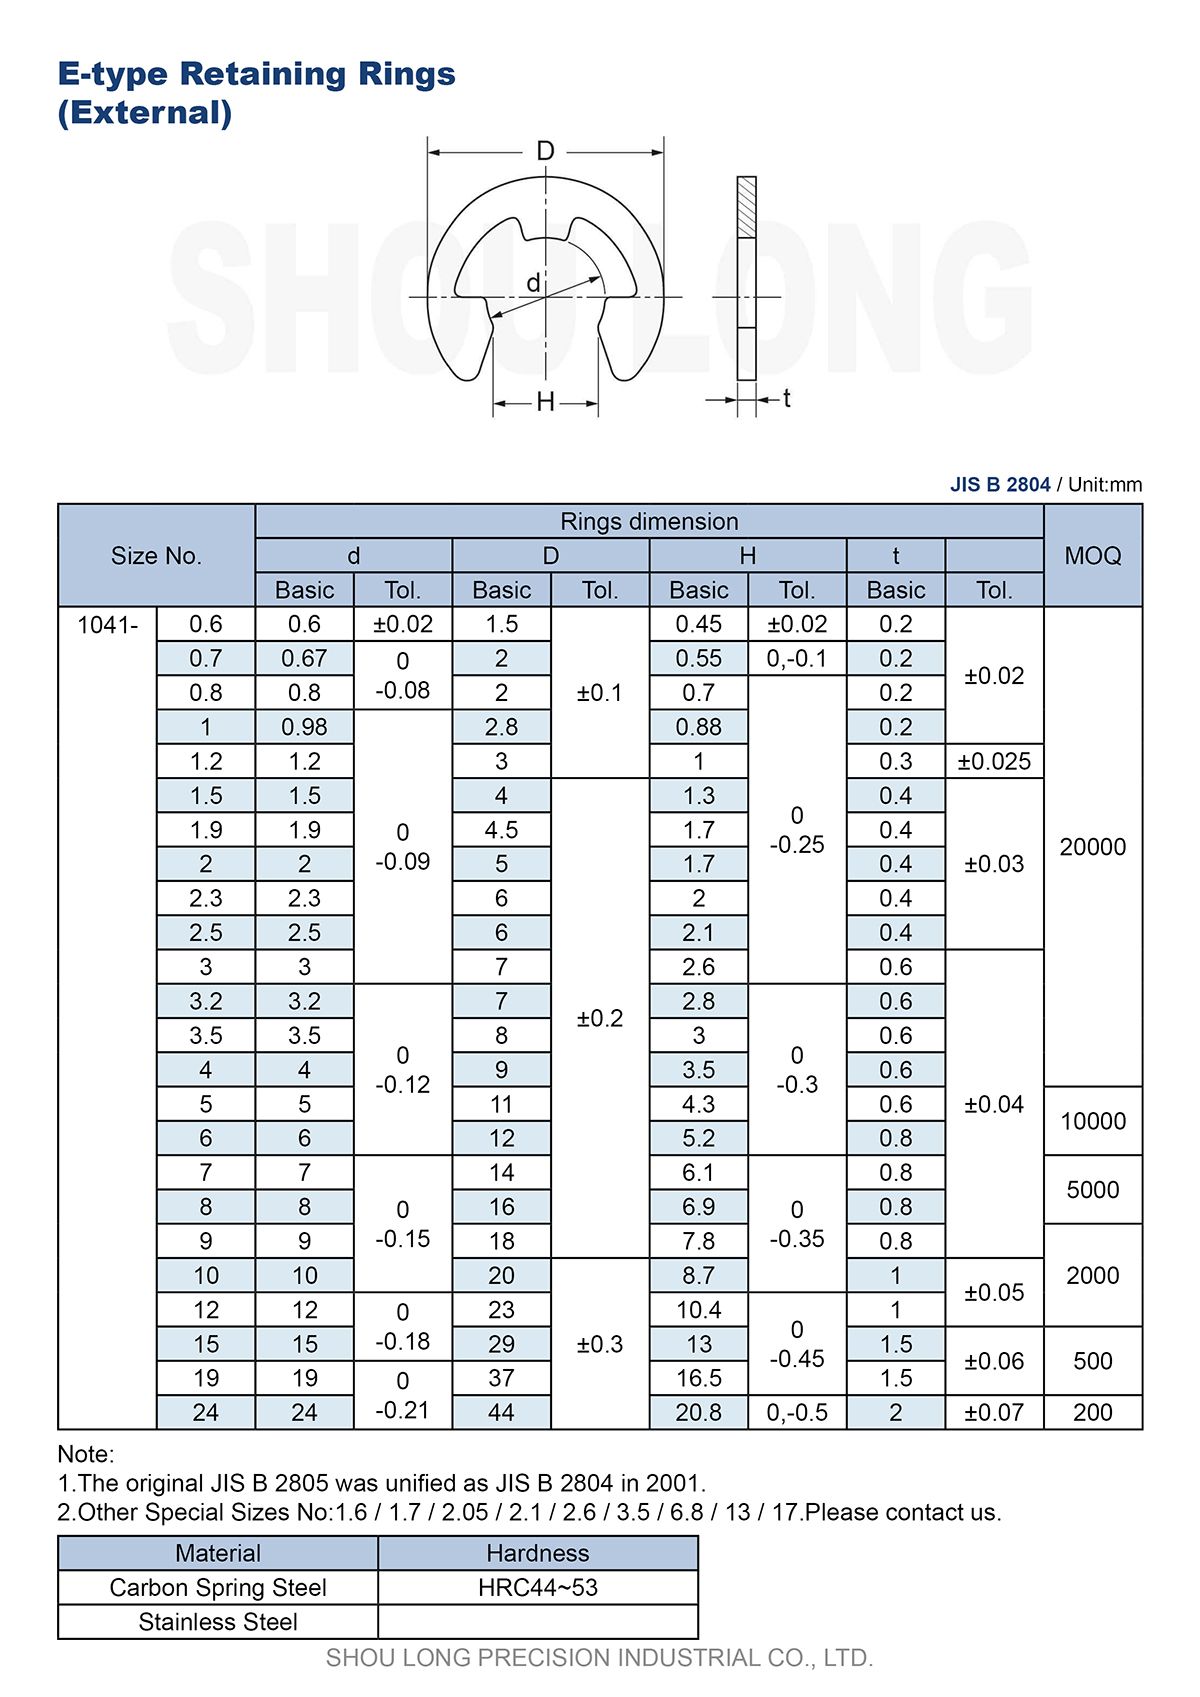 Spesifikasi Cincin Penahan Tipe E Metrik JIS untuk Poros B2804